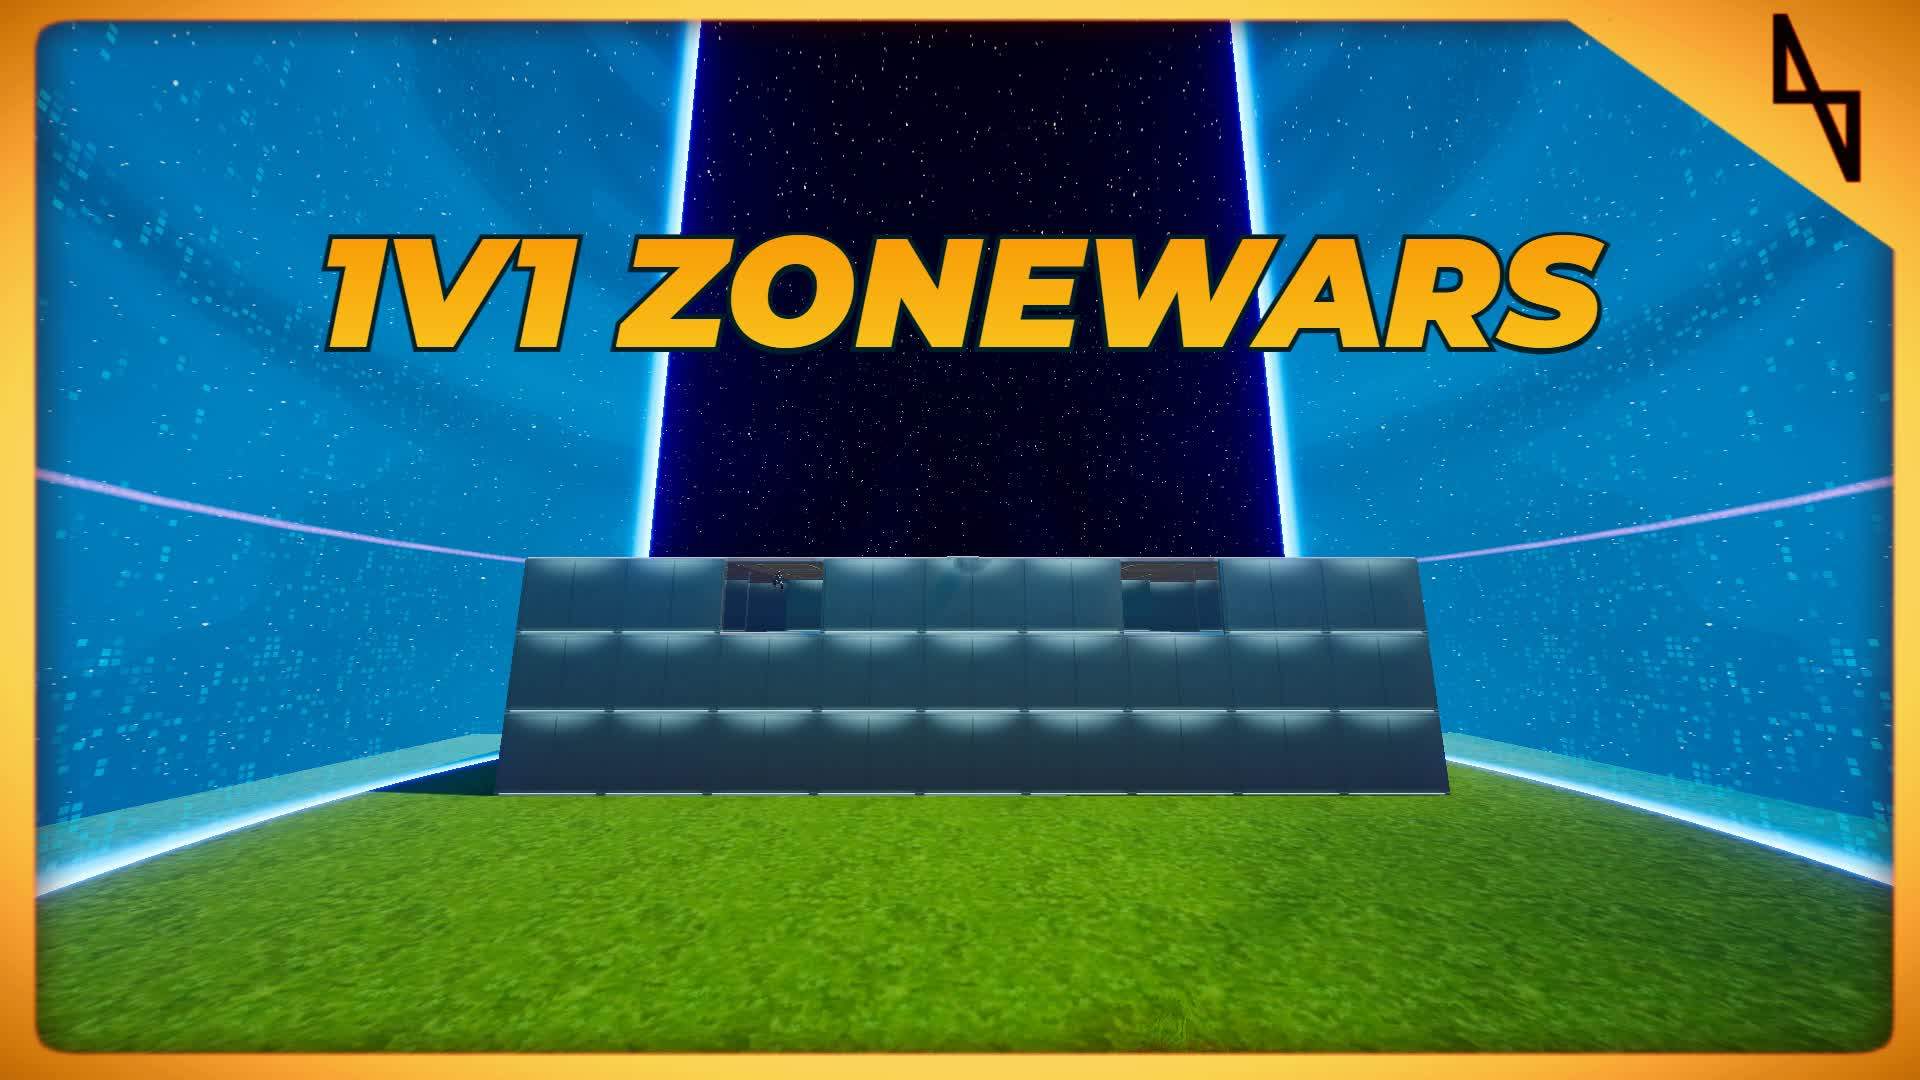 1v1 Zonewars | INFINITE